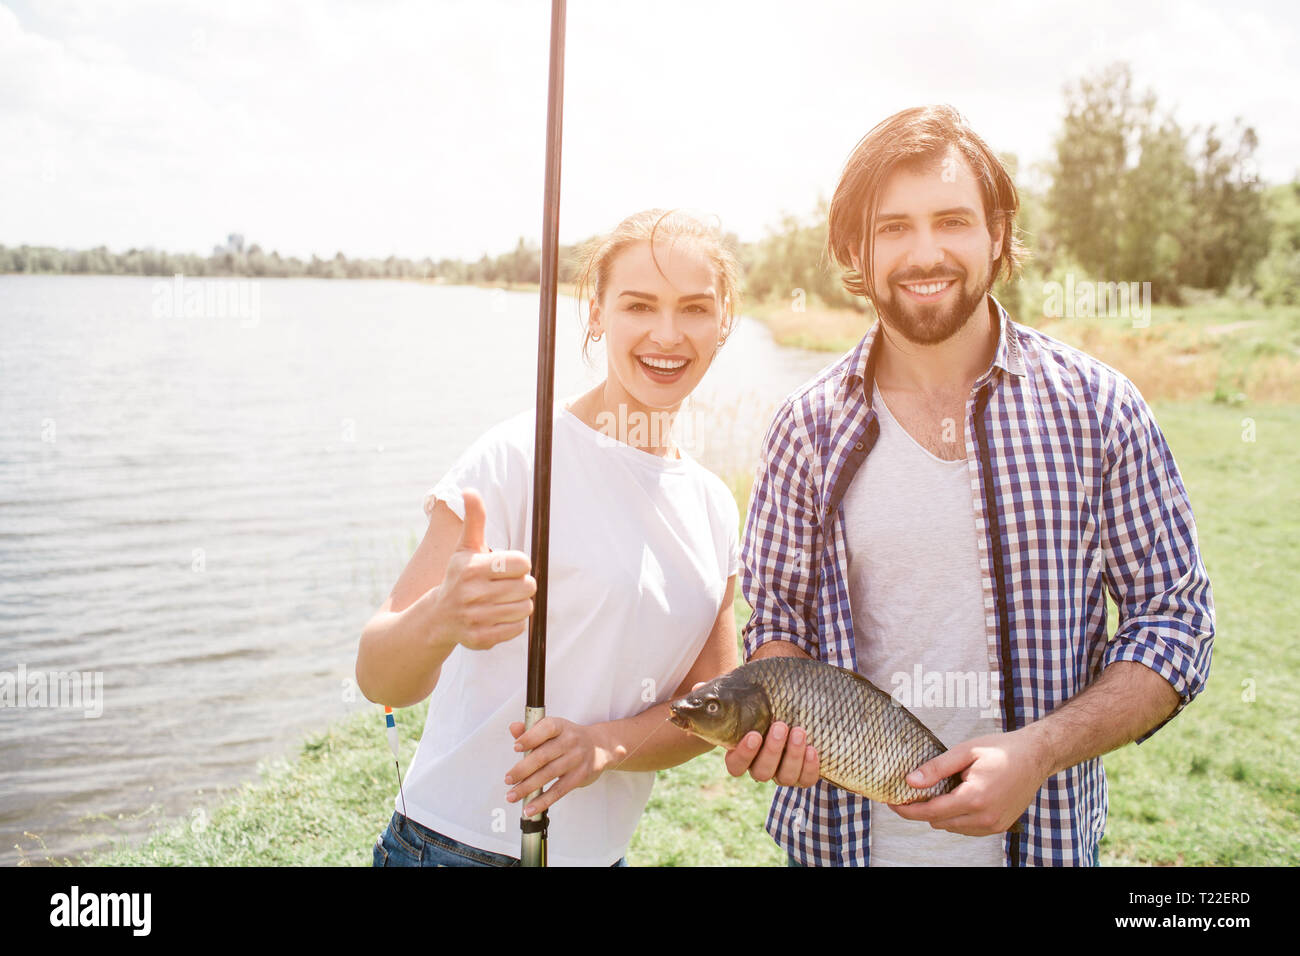 Glückliches Paar steht am Fluss shroe und lächelnd. Sie sucht auf Kamera. Mädchen hält Ihr großes Daumen hoch halten Fisch und-Stange, während der Mensch ist h Stockfoto